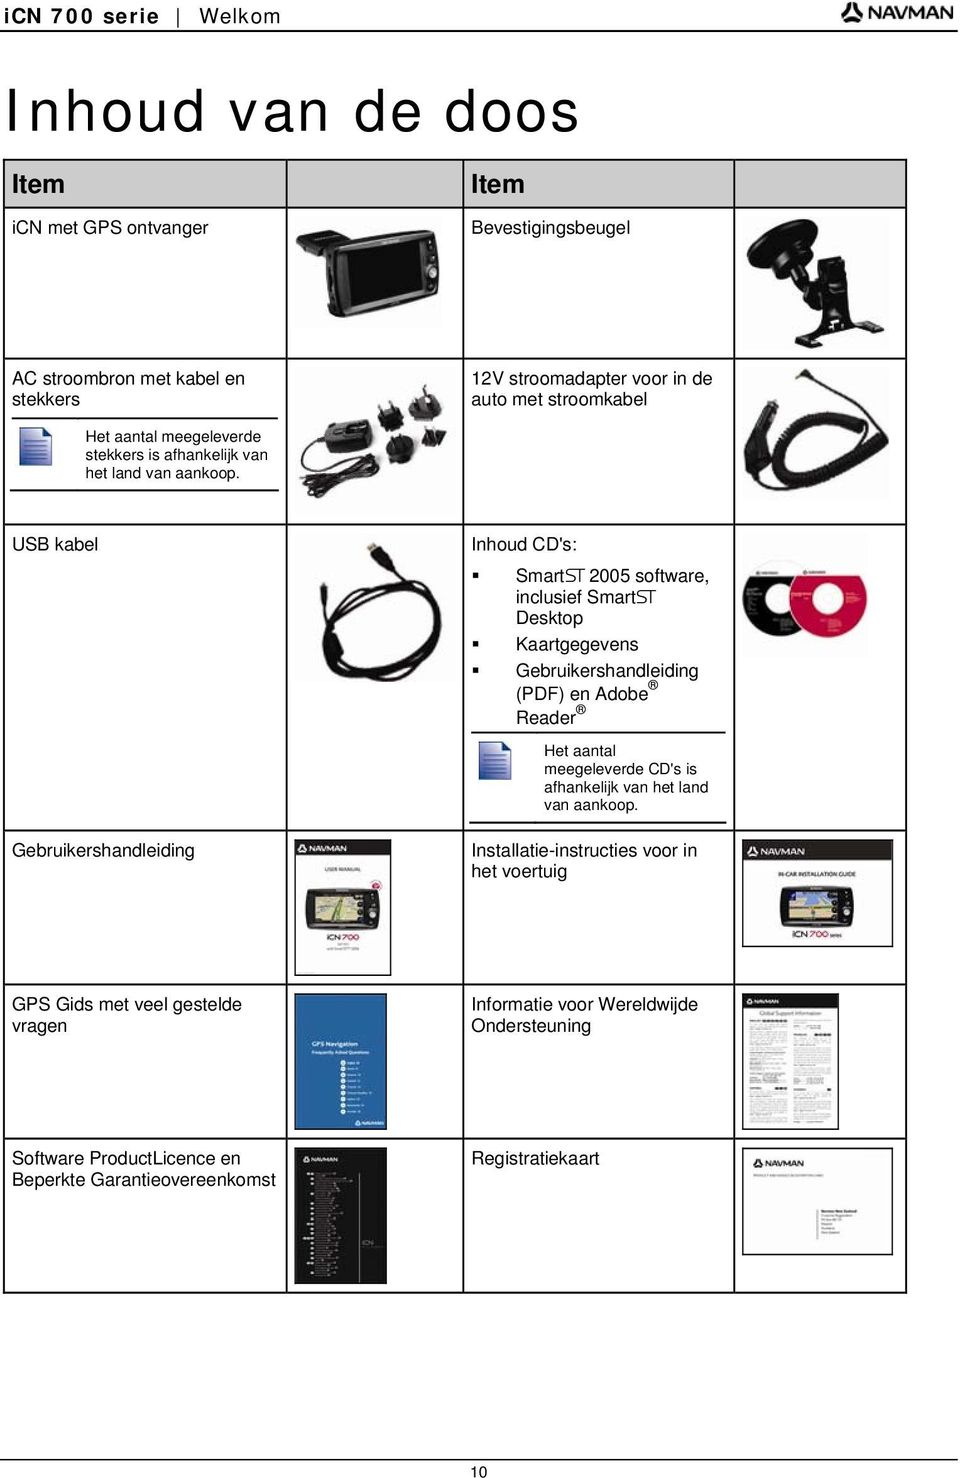 USB kabel Gebruikershandleiding Inhoud CD's: SmartS 2005 software, inclusief SmartS Desktop Kaartgegevens Gebruikershandleiding (PDF) en Adobe Reader Het aantal